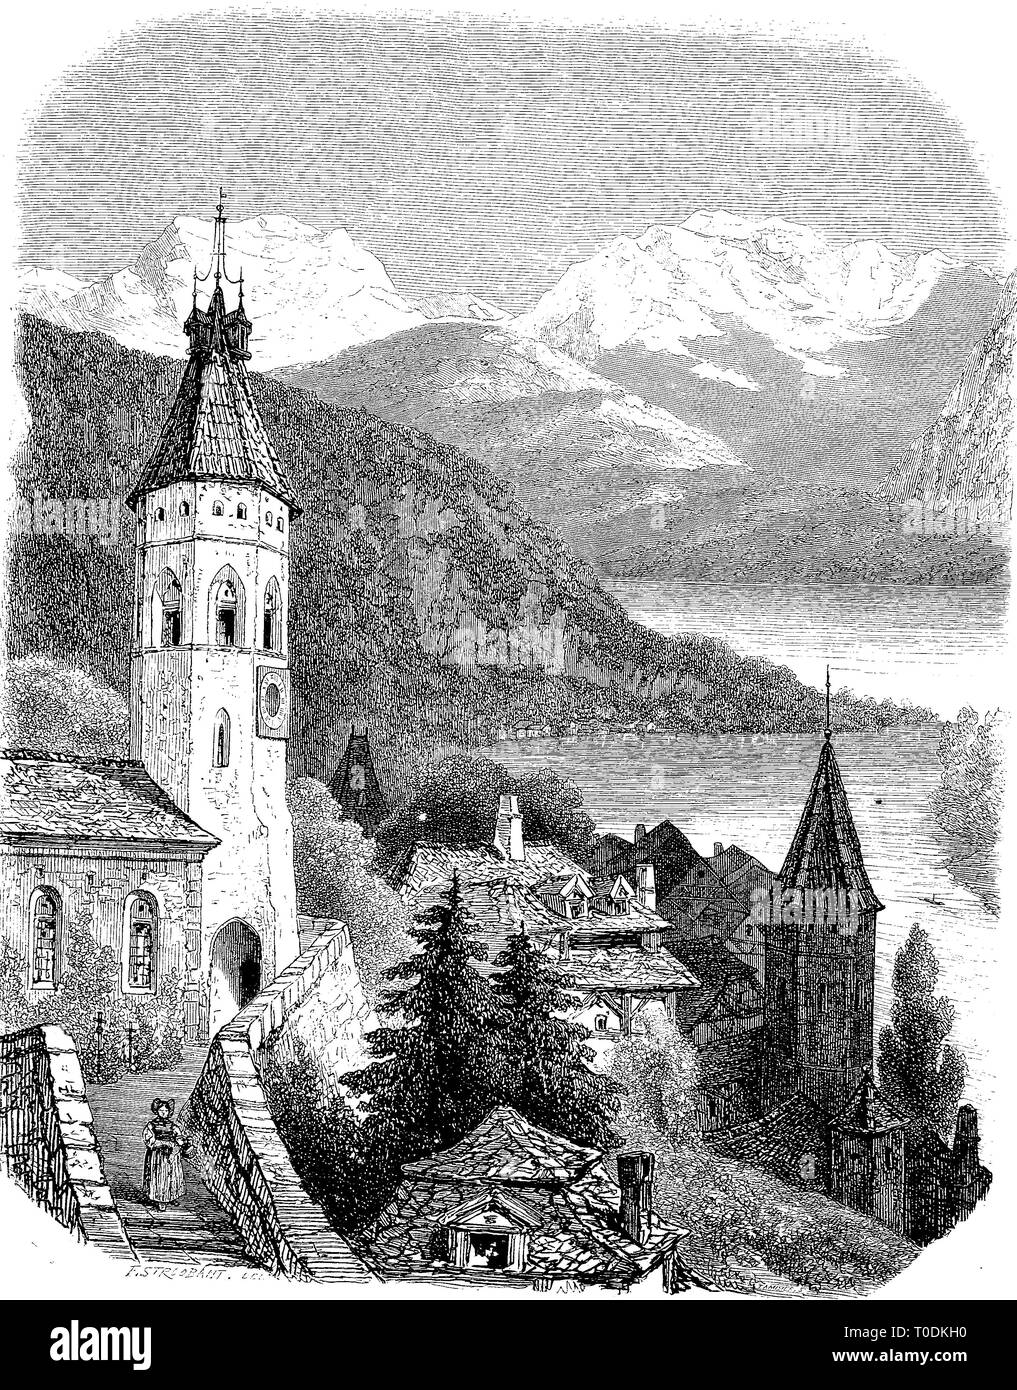 L'amélioration de la reproduction numérique, avis de Thoune à du lac de Thun, Suisse, woodprint original du 19ème siècle e Banque D'Images